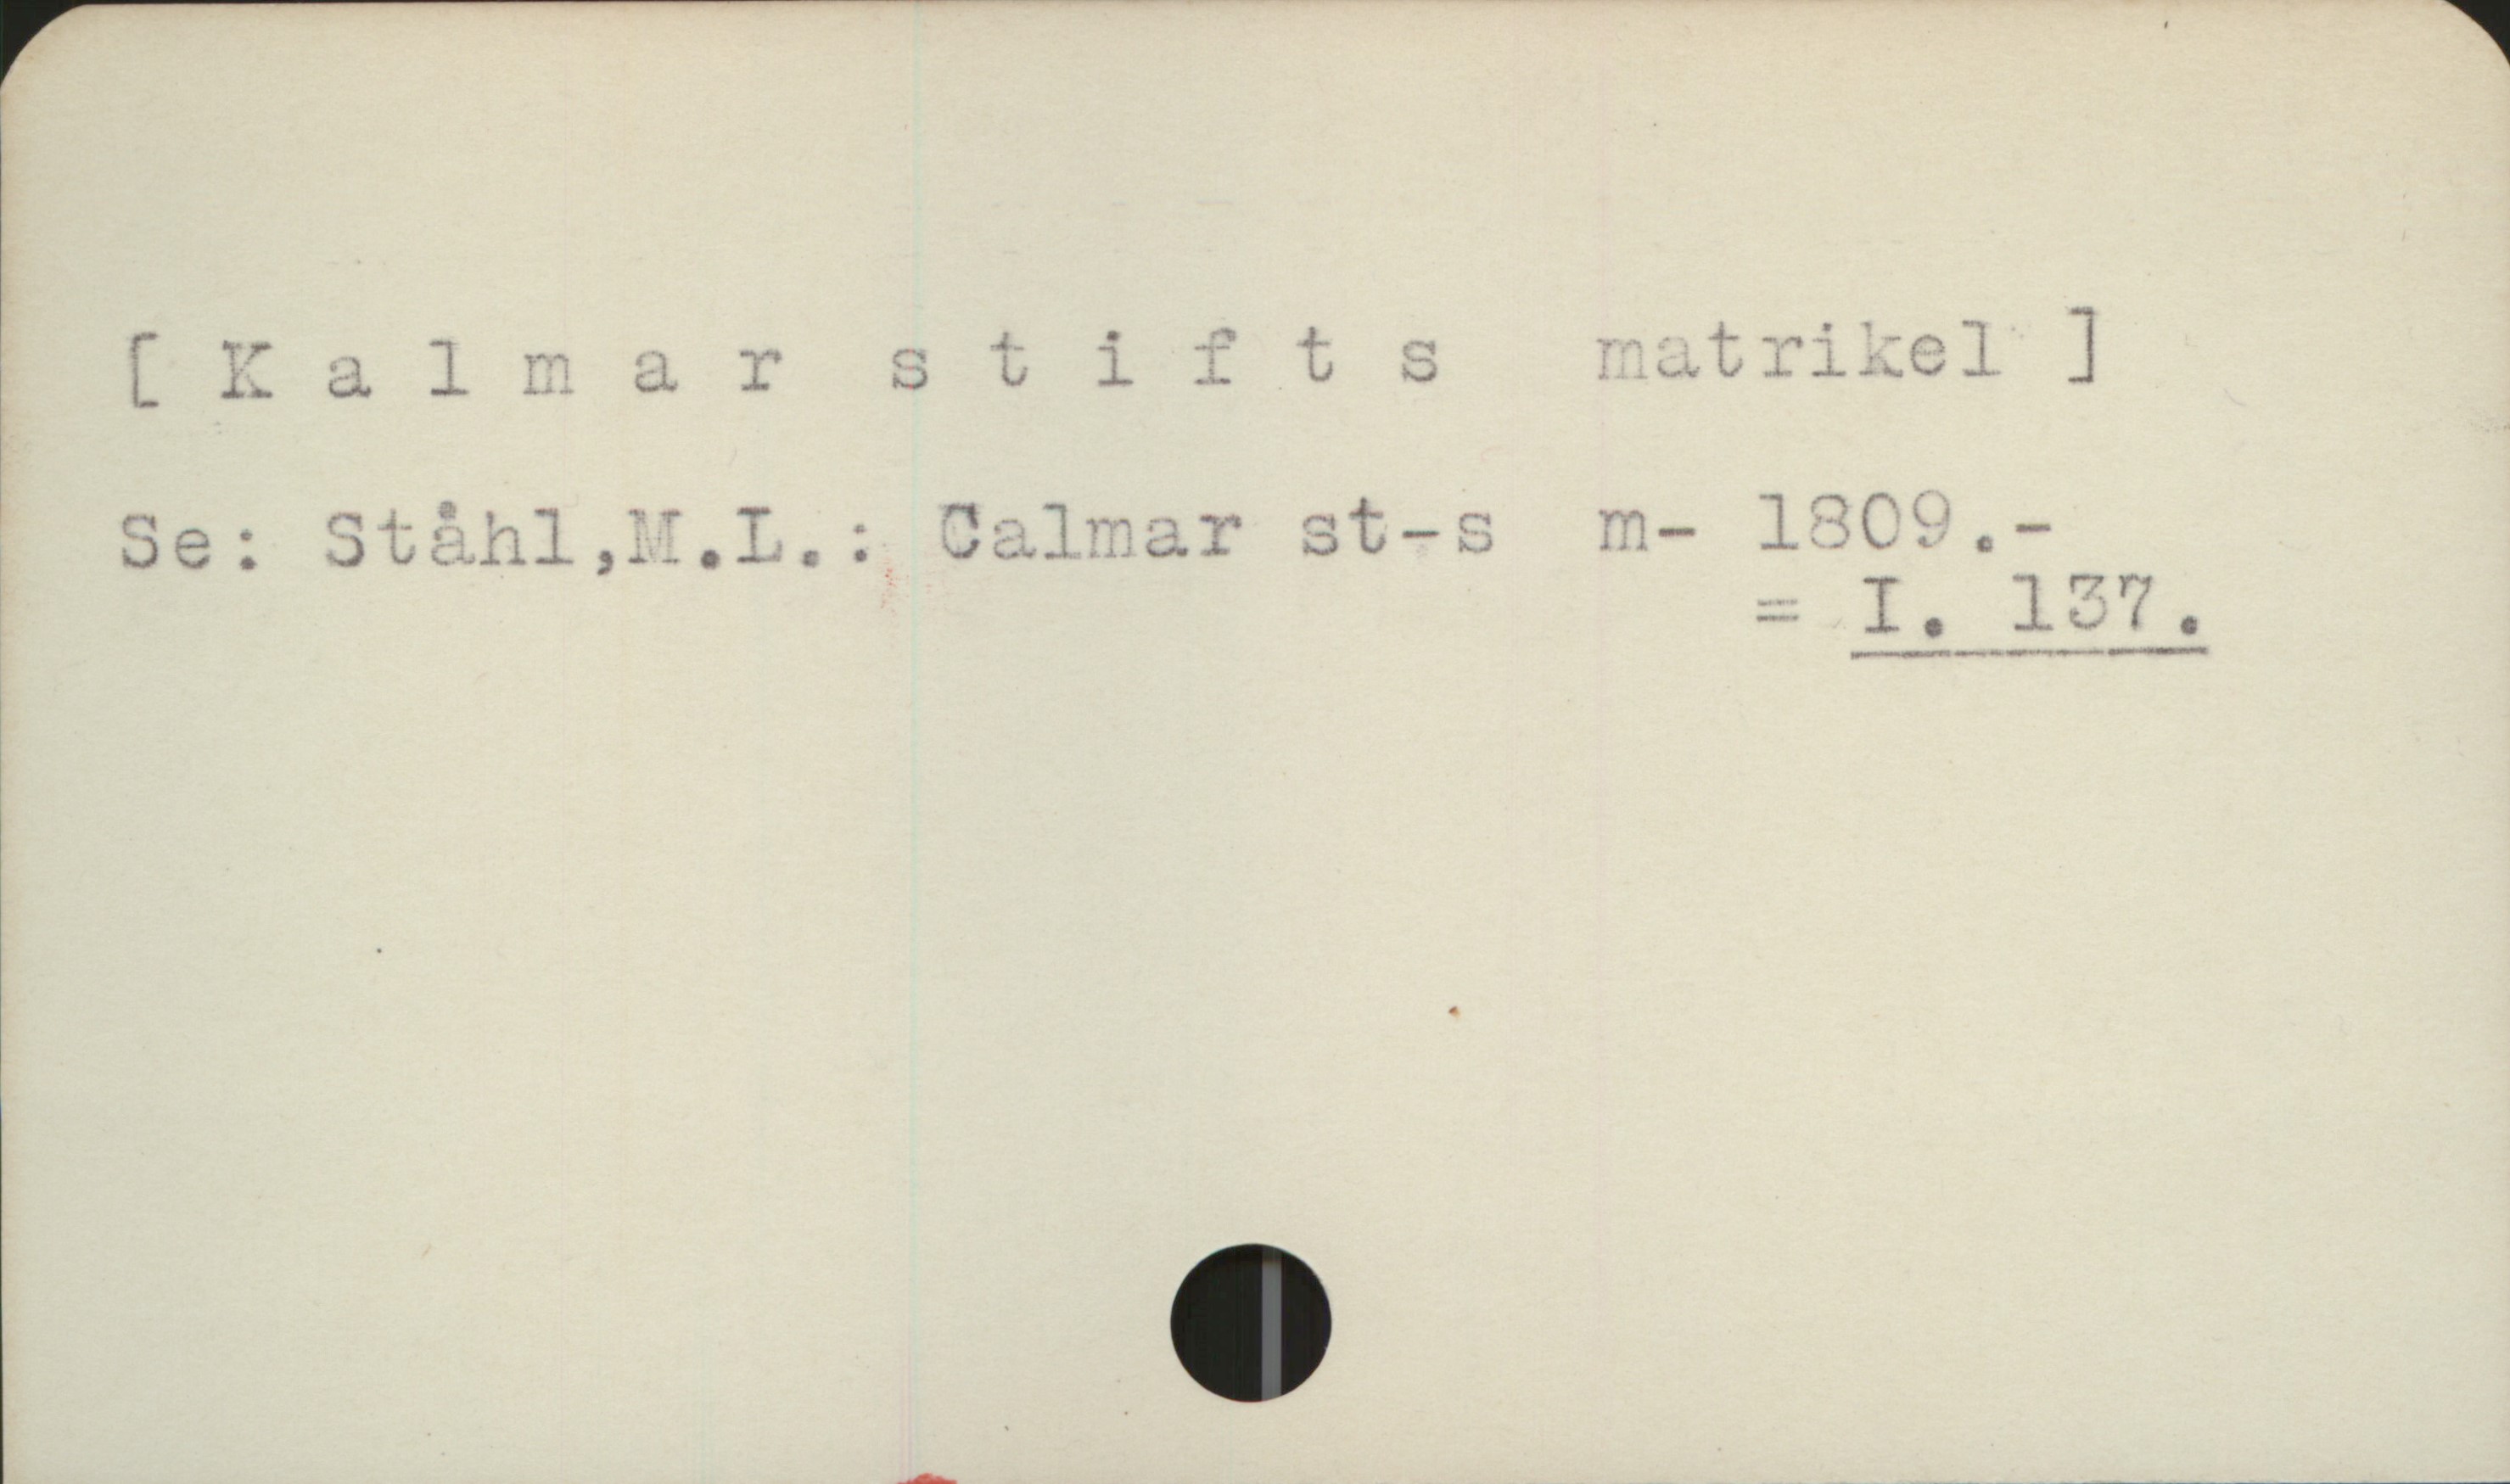  [Kalmar stifts matrikel]

Se: Ståhl,M.L.: Calmar st-s m- 1809.-

=I. 137.
